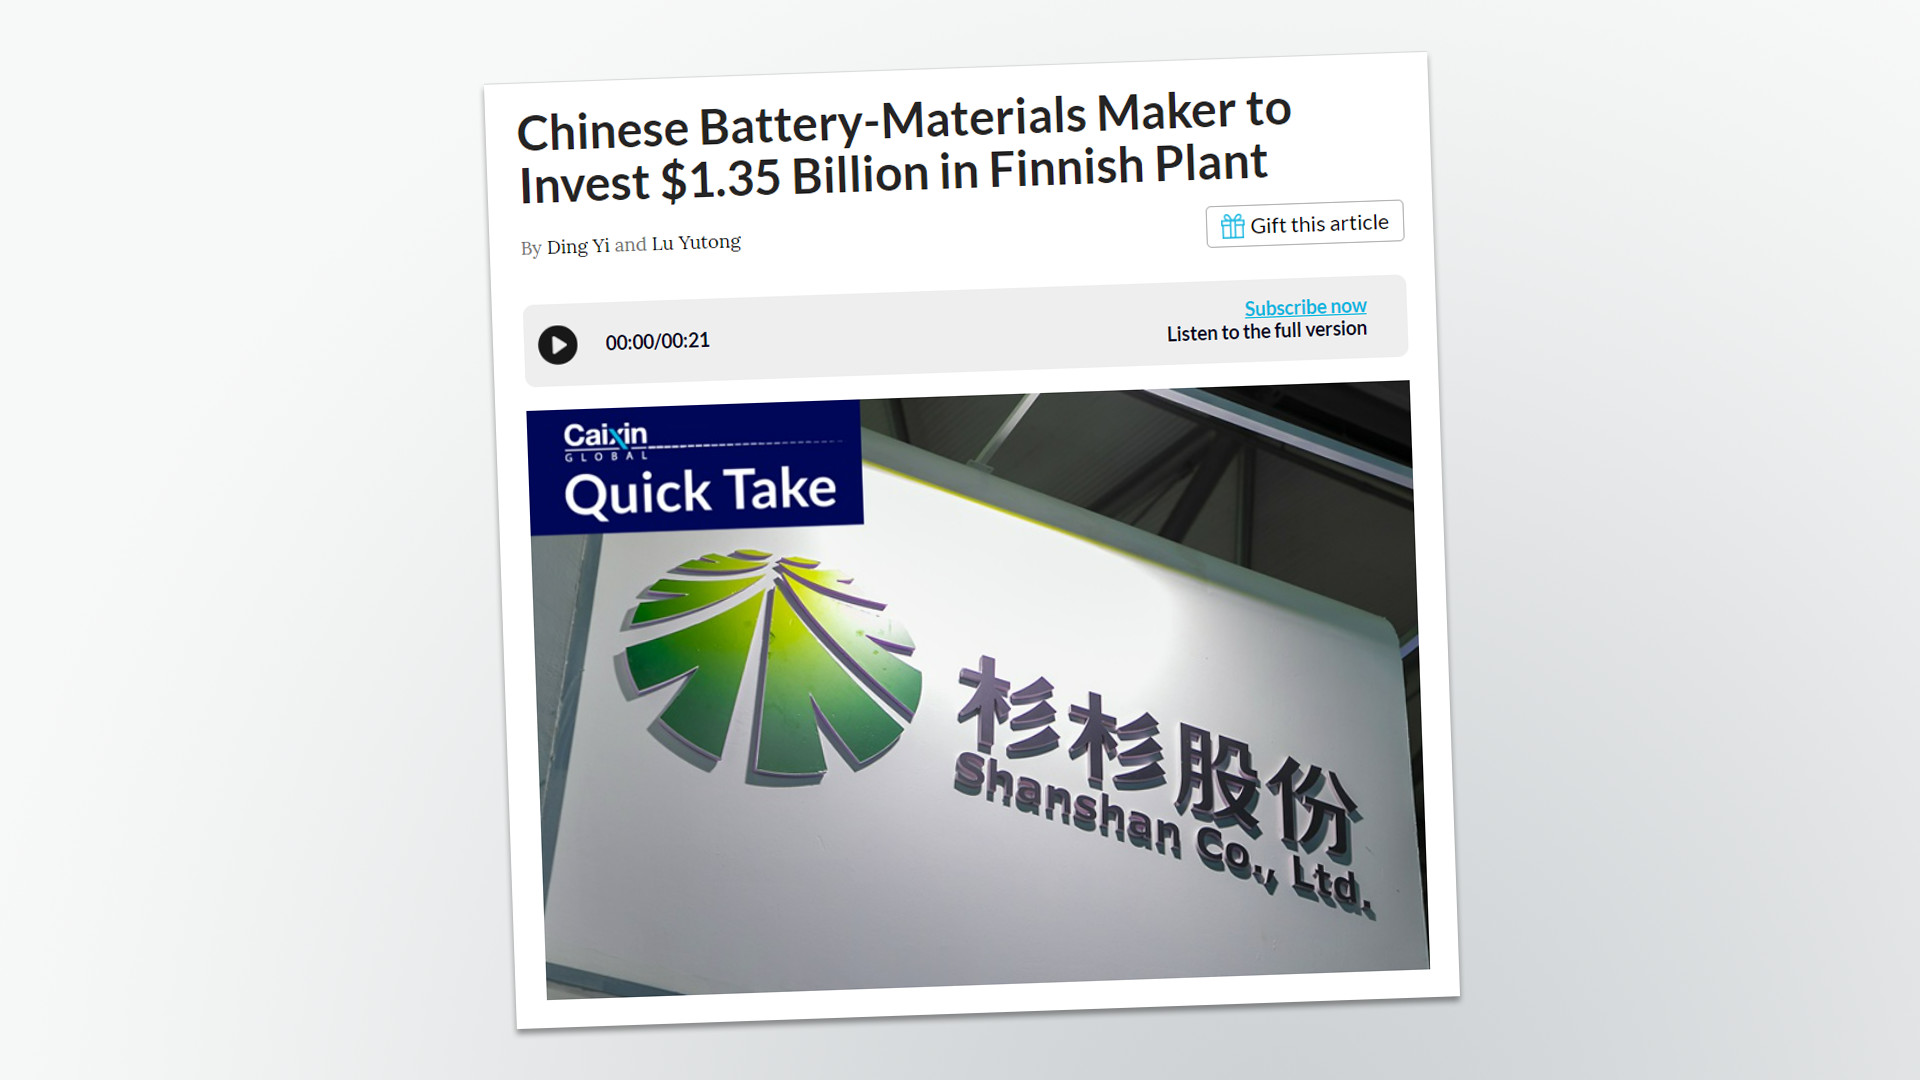 Ein chinesisches Unternehmen baut in Finnland eine 1.3 Milliarden Euro teure Batteriematerialfabrik